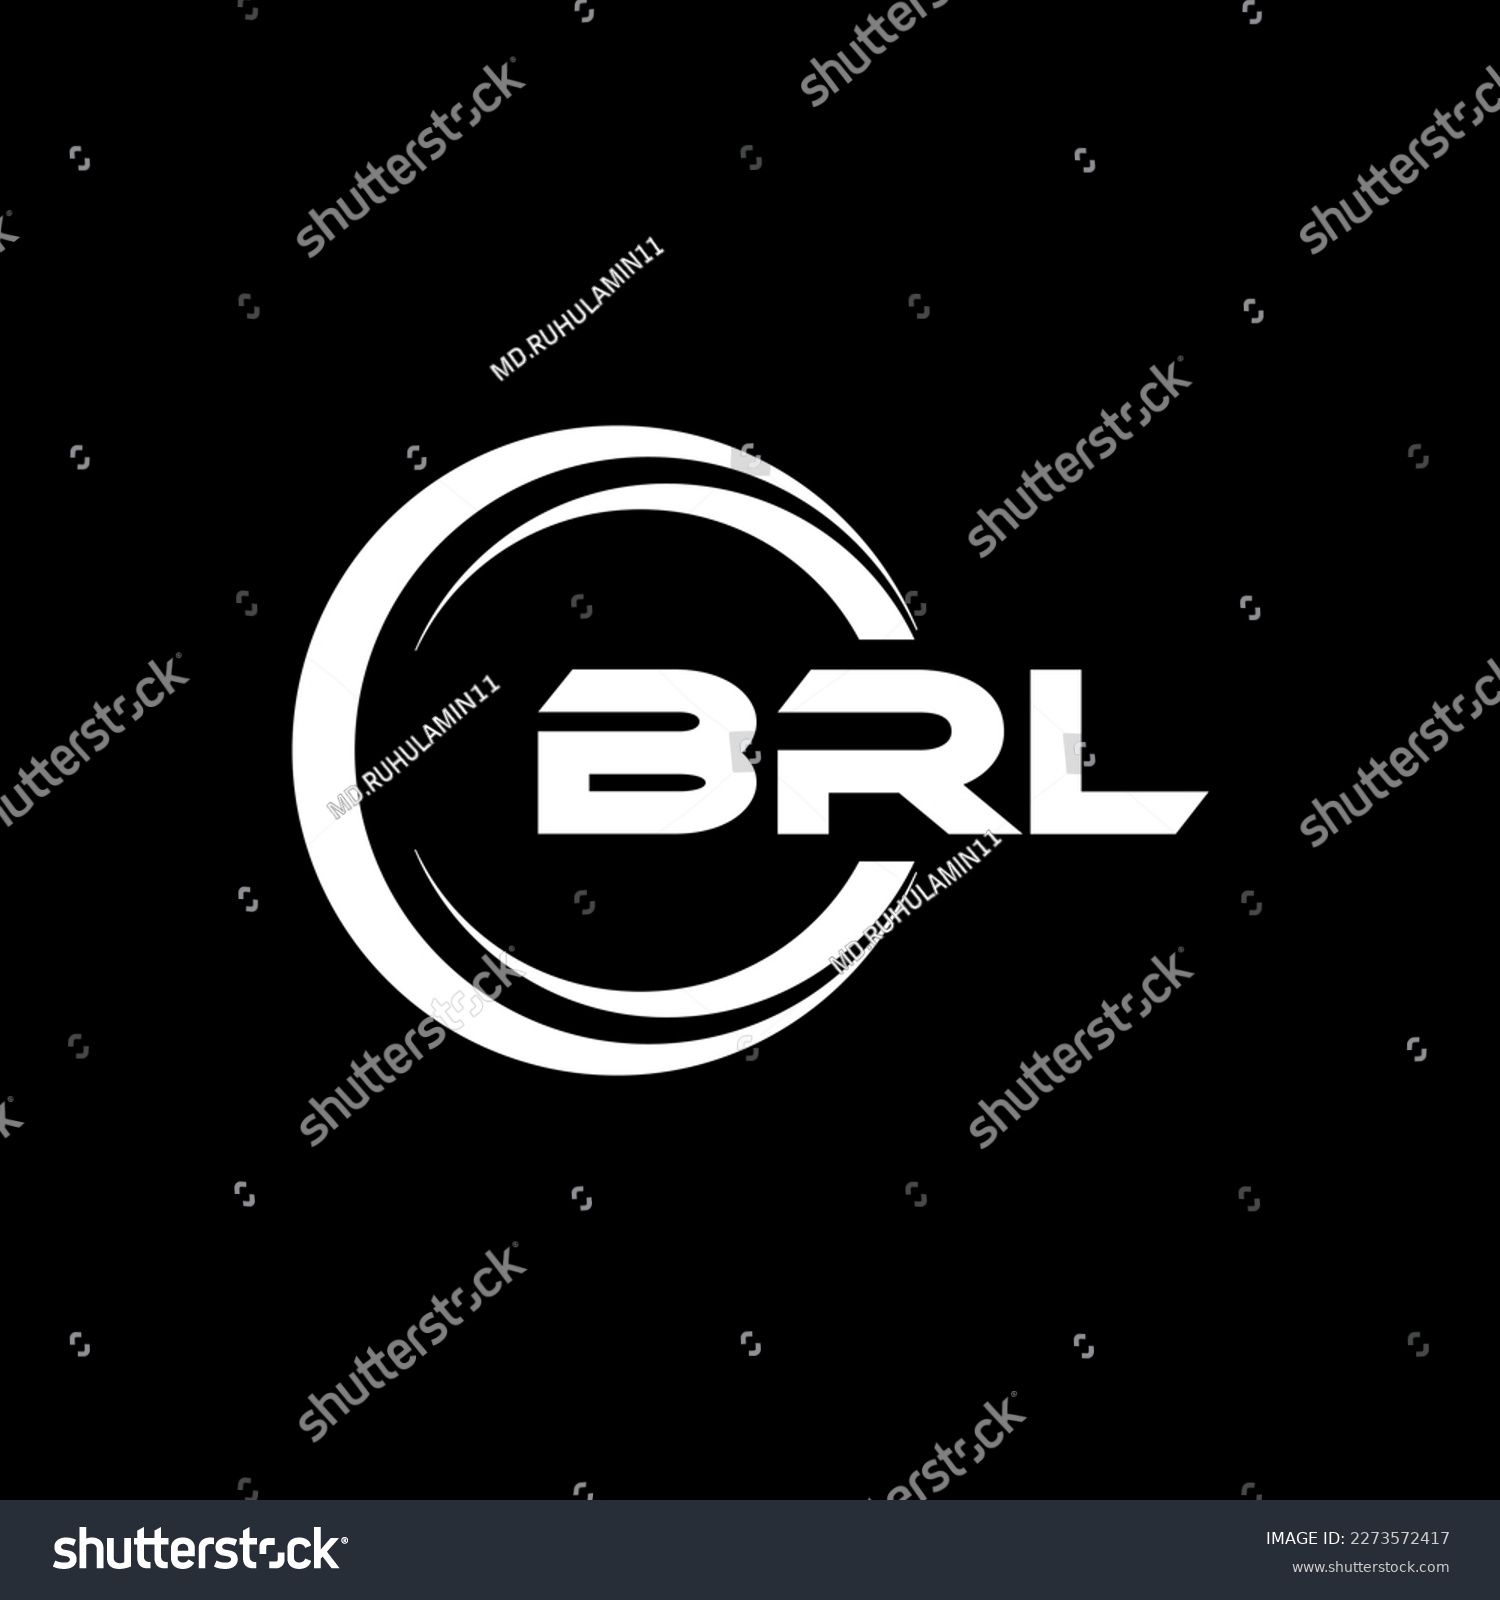 SVG of BRL letter logo design in illustration. Vector logo, calligraphy designs for logo, Poster, Invitation, etc. svg